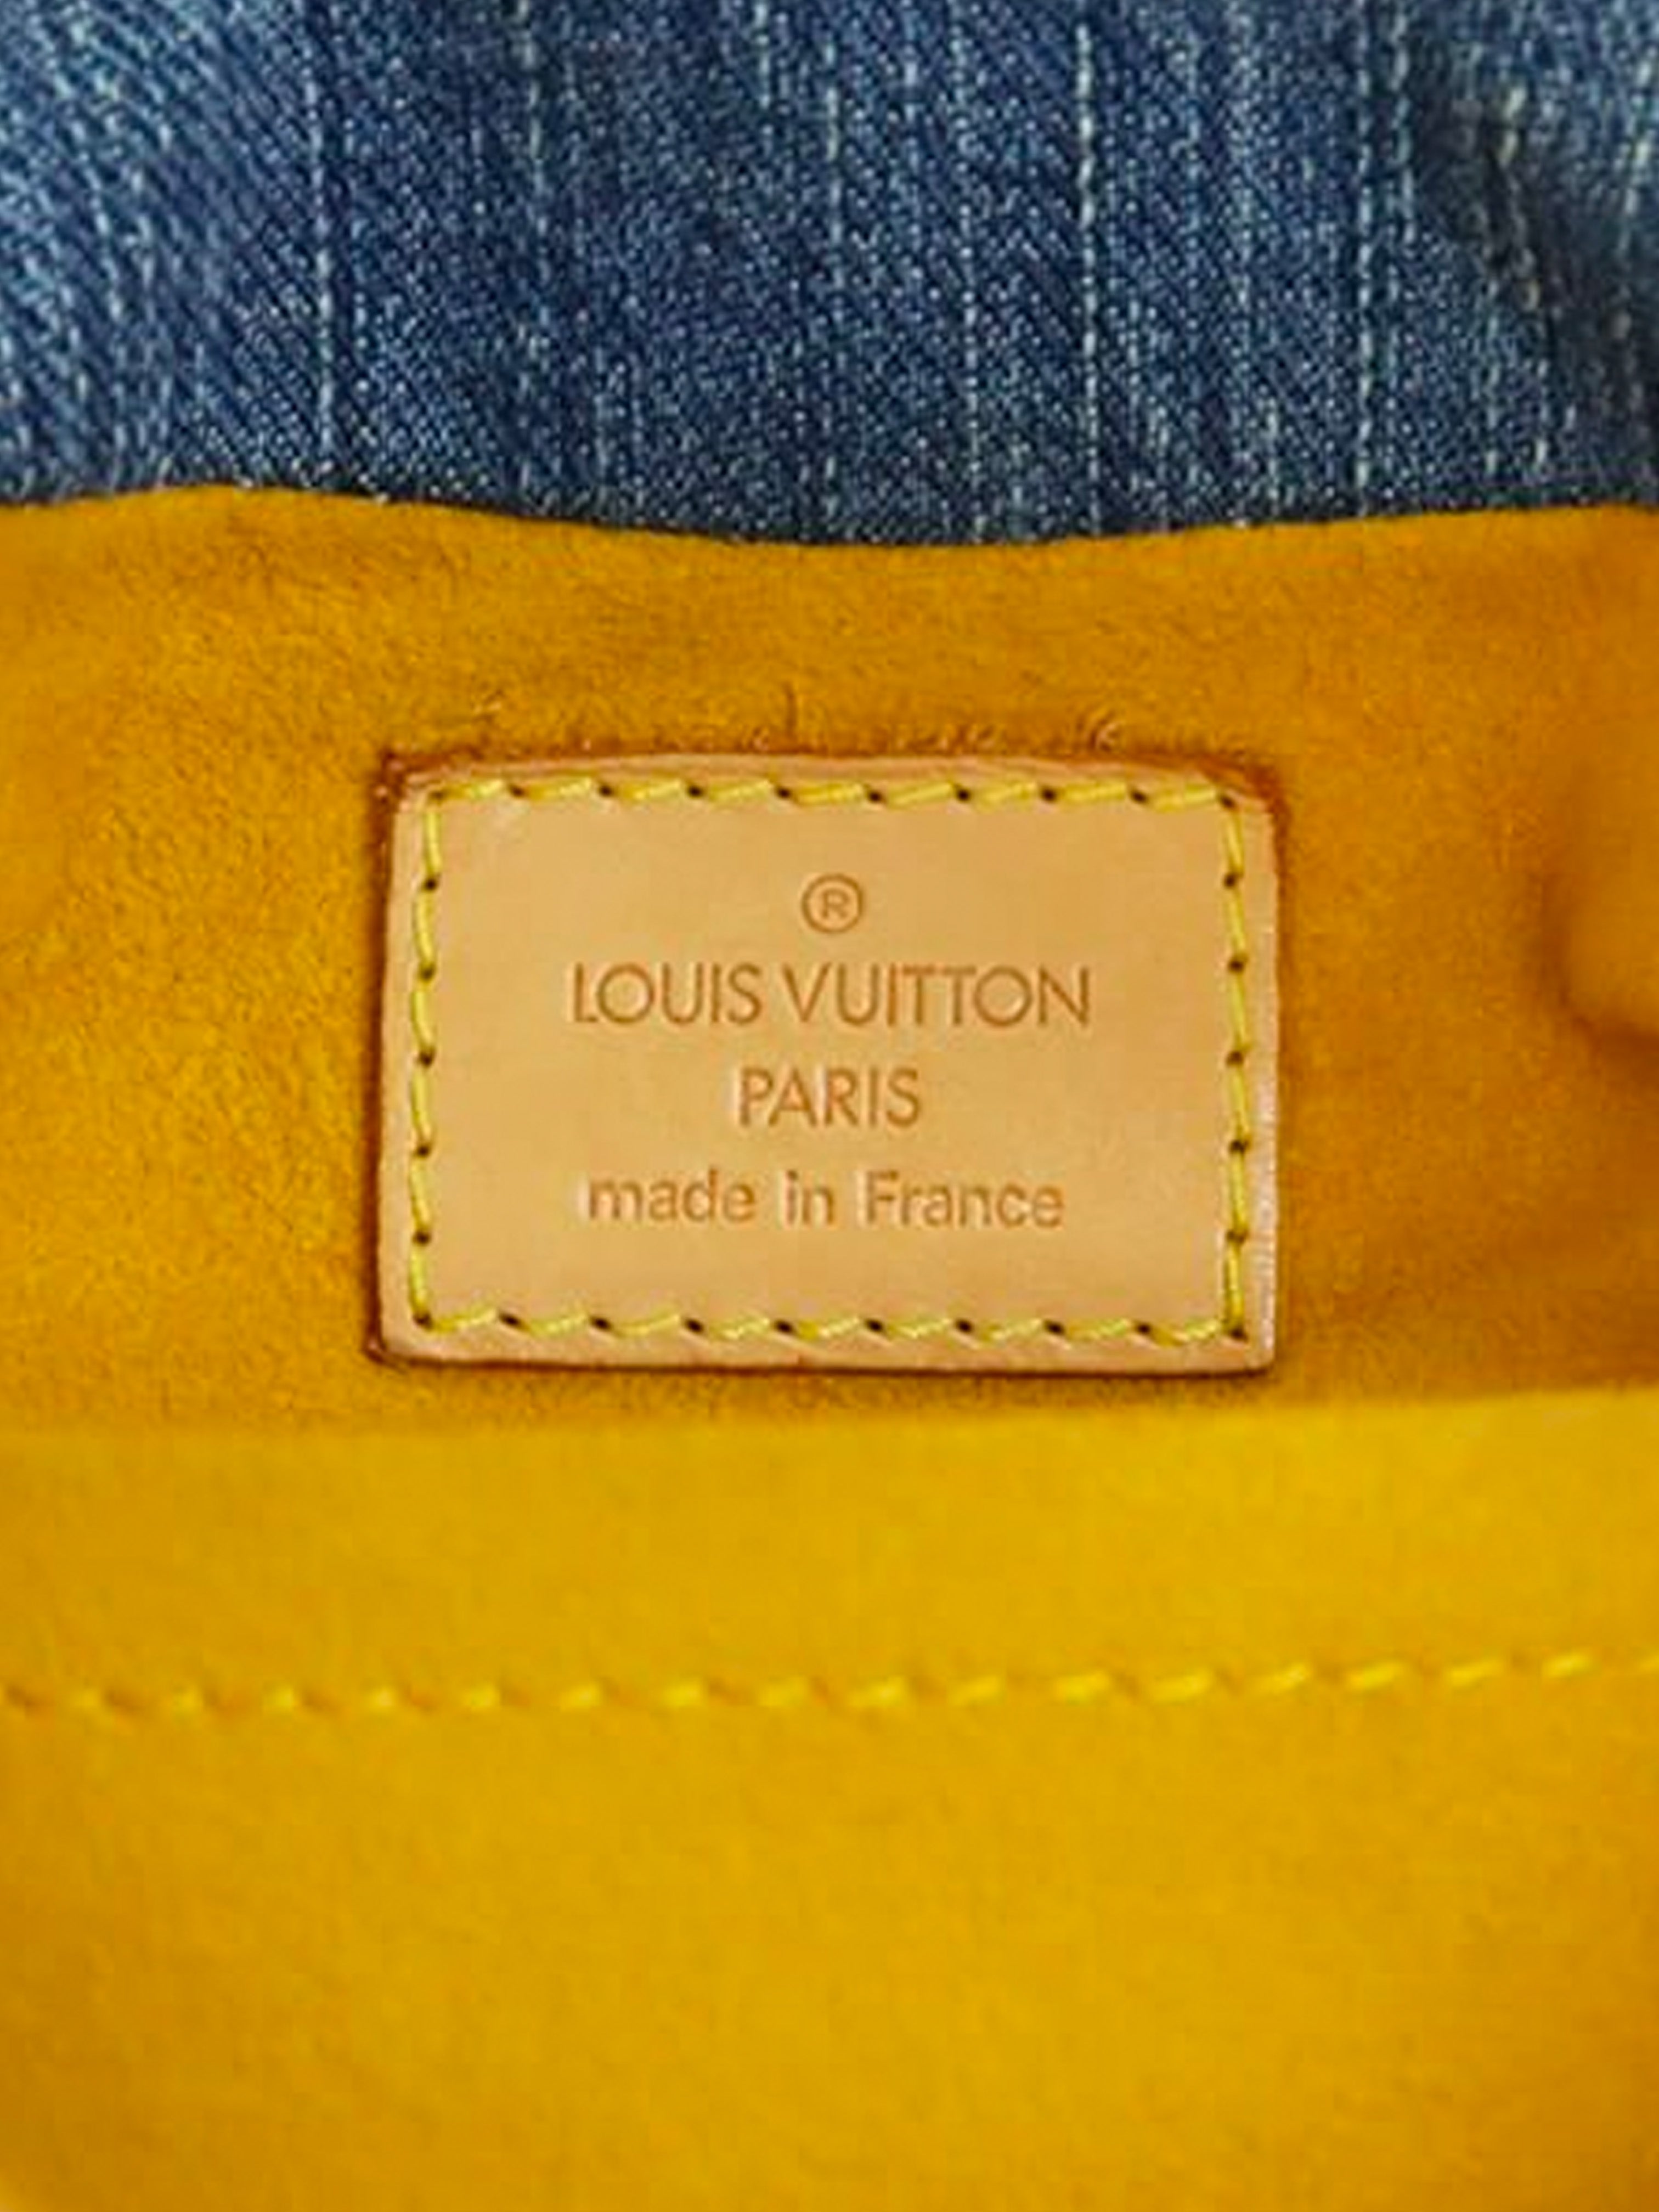 My Louis Vuitton Collection Part 12--Blue Denim Monogram Mini